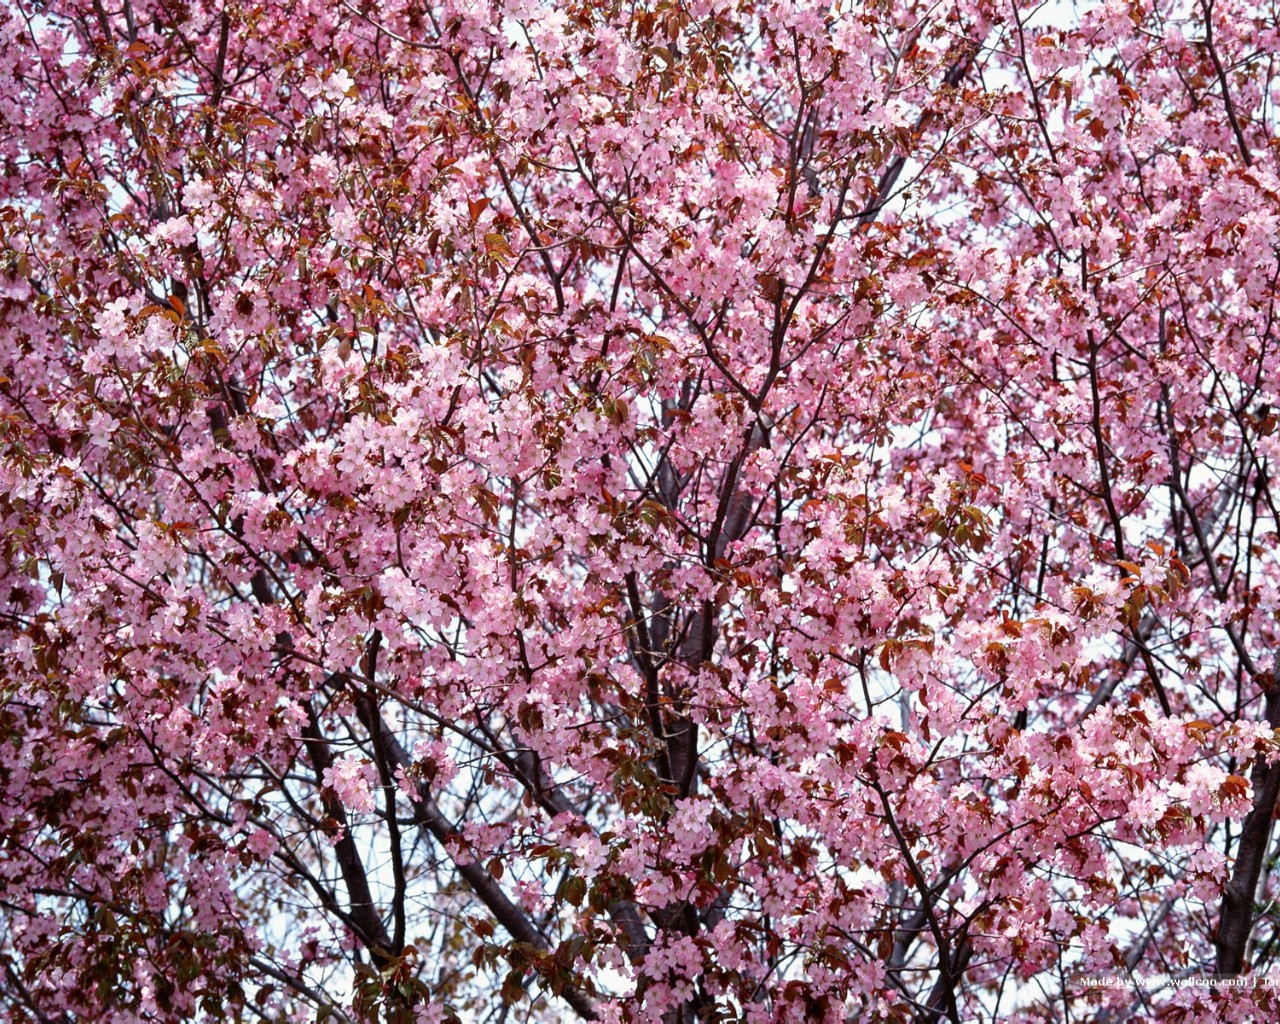 壁纸1280x1024 日本樱花图片 Japanese Sakura Cherry Blossom Photos壁纸 三月樱花节-樱花壁纸壁纸 三月樱花节-樱花壁纸图片 三月樱花节-樱花壁纸素材 花卉壁纸 花卉图库 花卉图片素材桌面壁纸